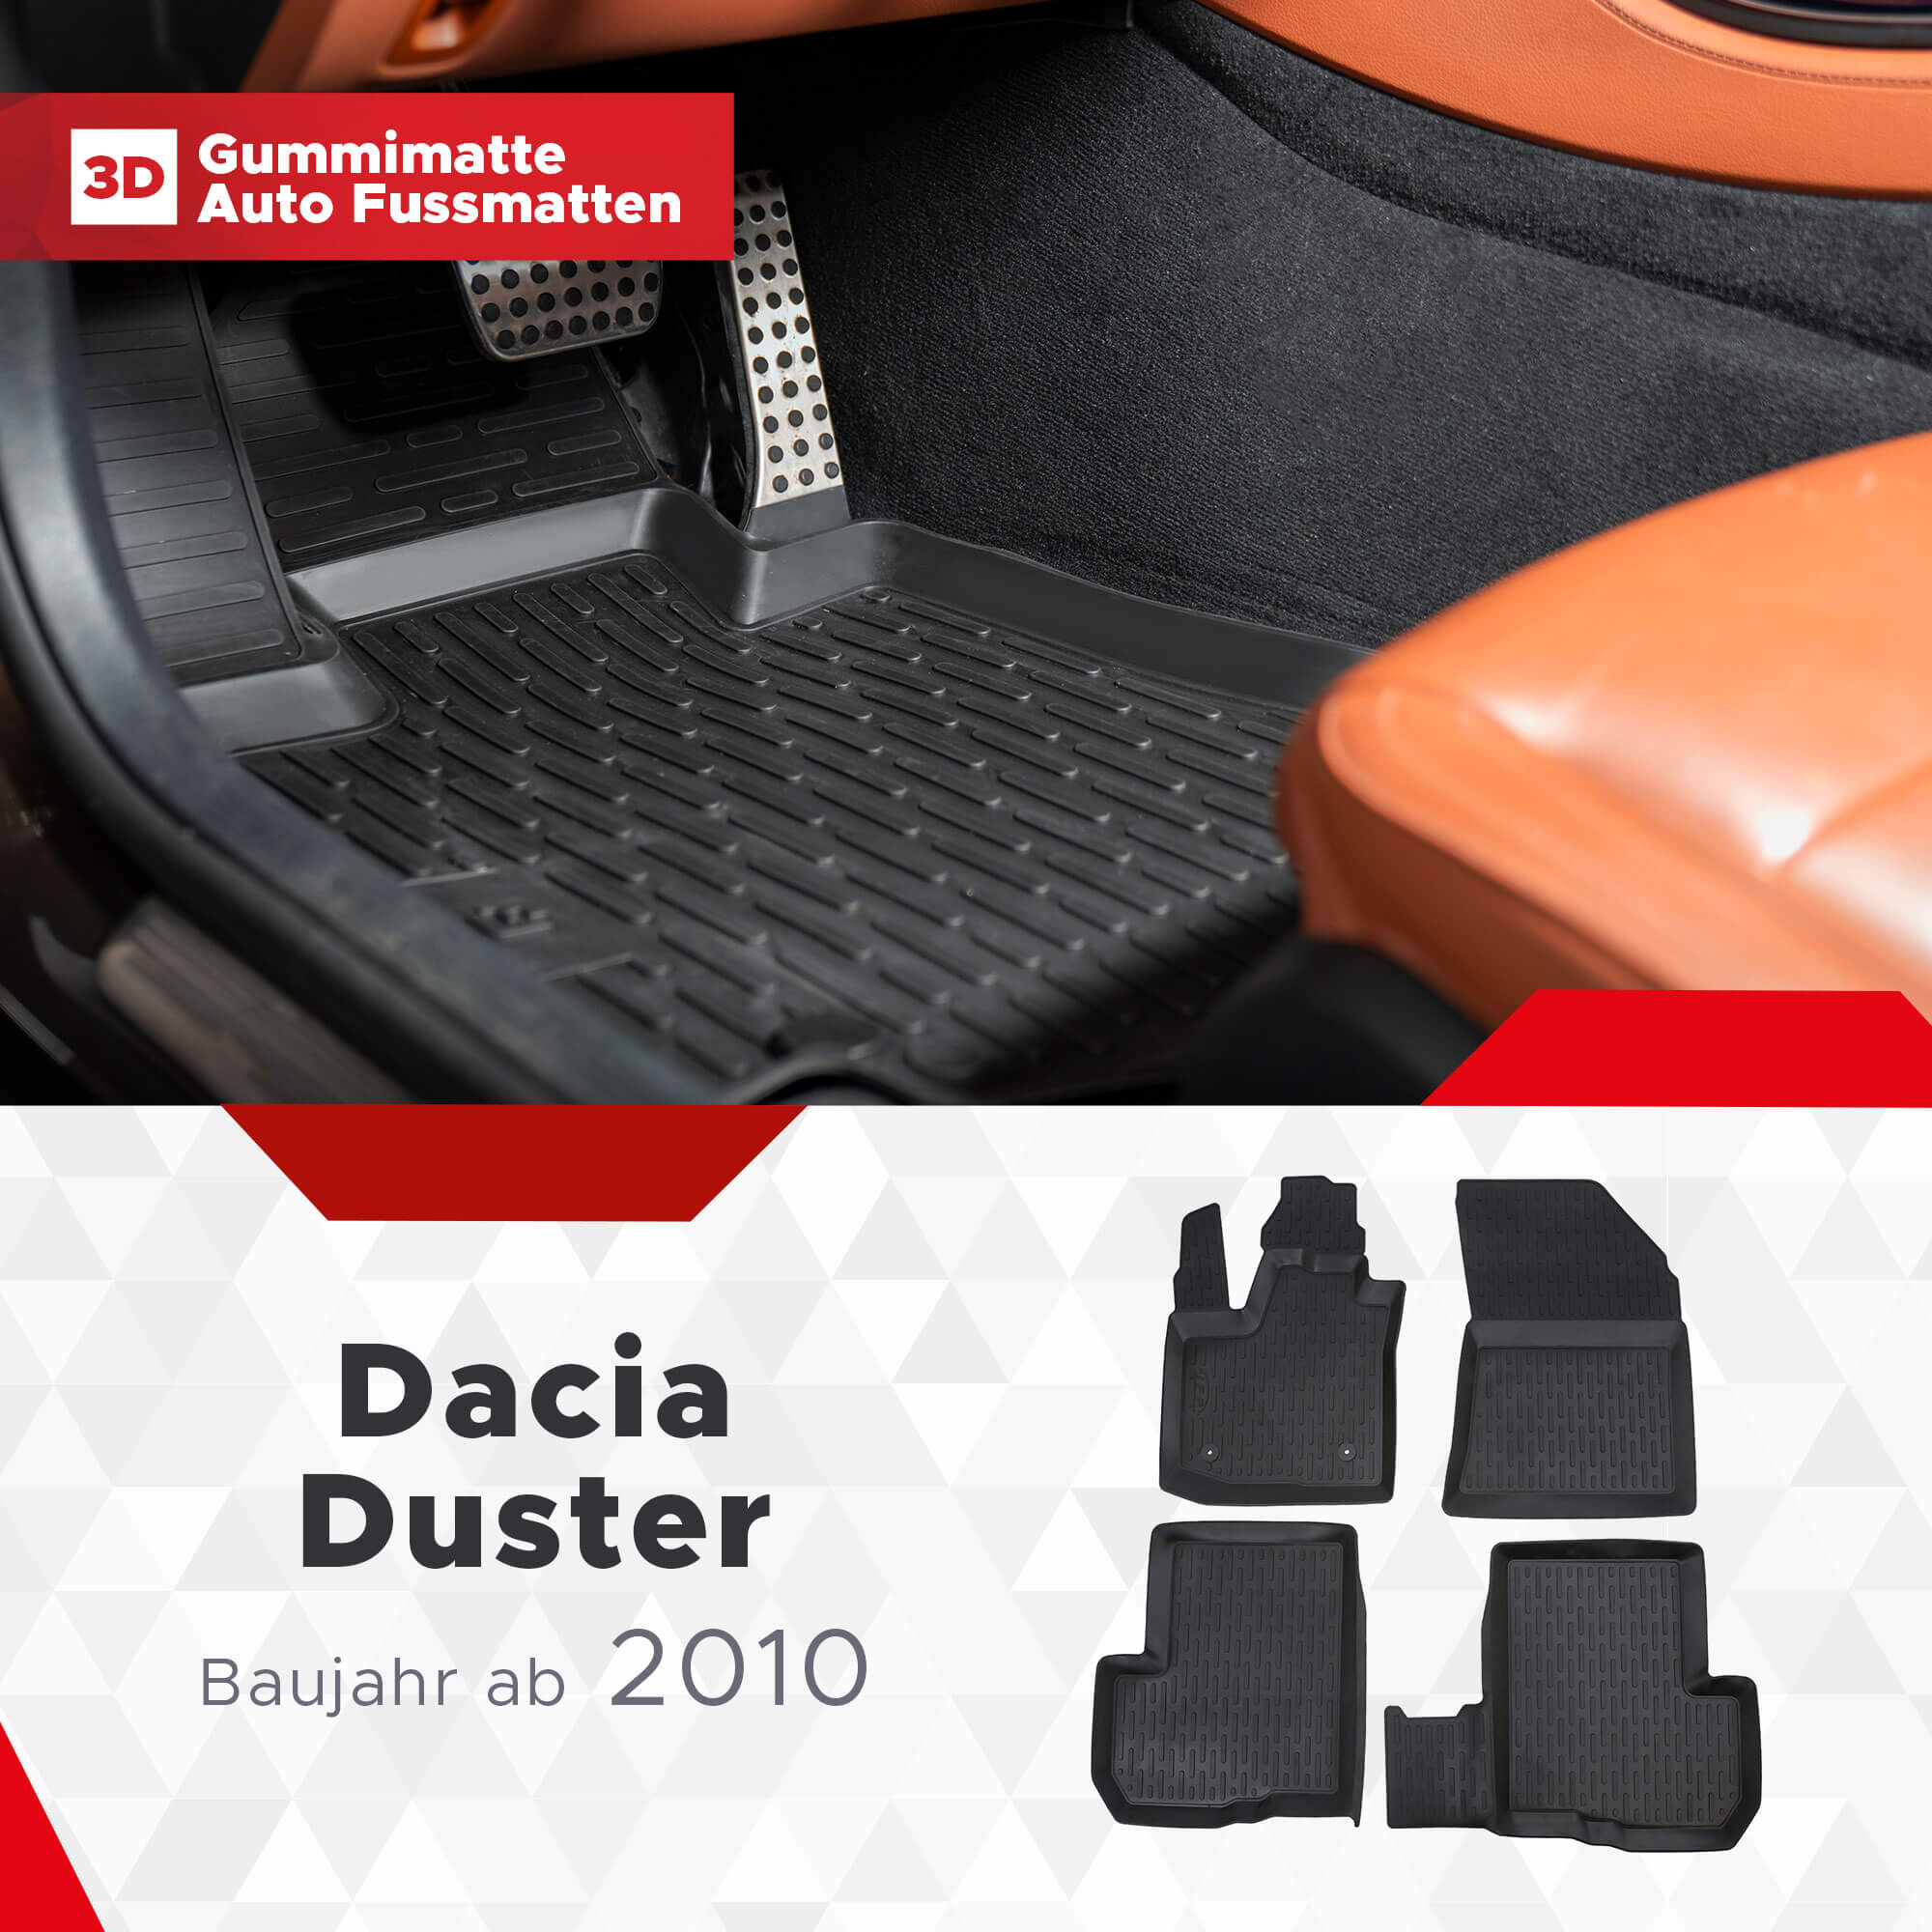 3D Fussmatten passend für Dacia Duster 4*2 ab 2010